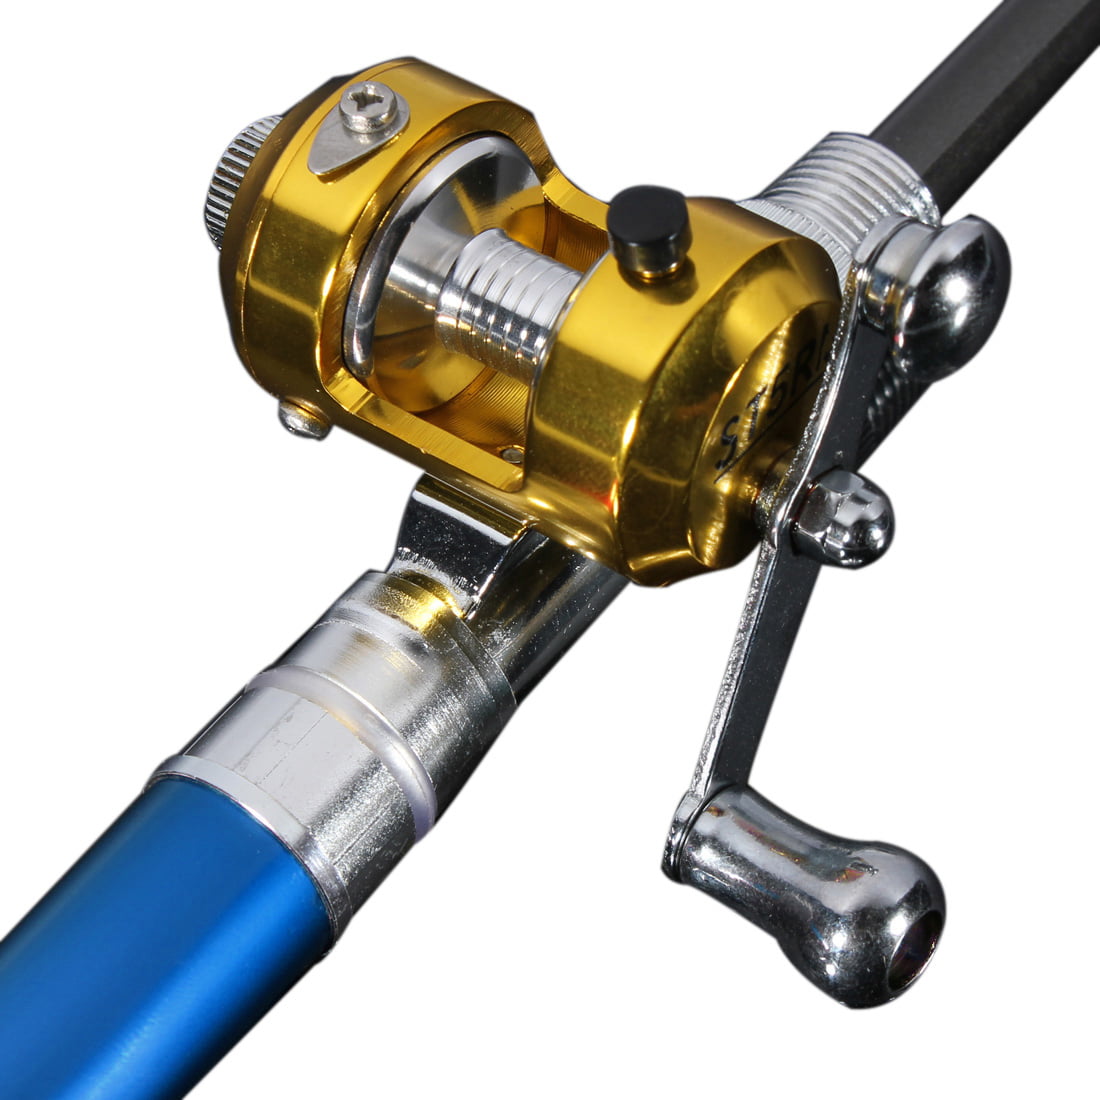 Telescopic Mini Portable Pocket Fish Pen Aluminum Alloy Fishing Rod Pole+Reel 